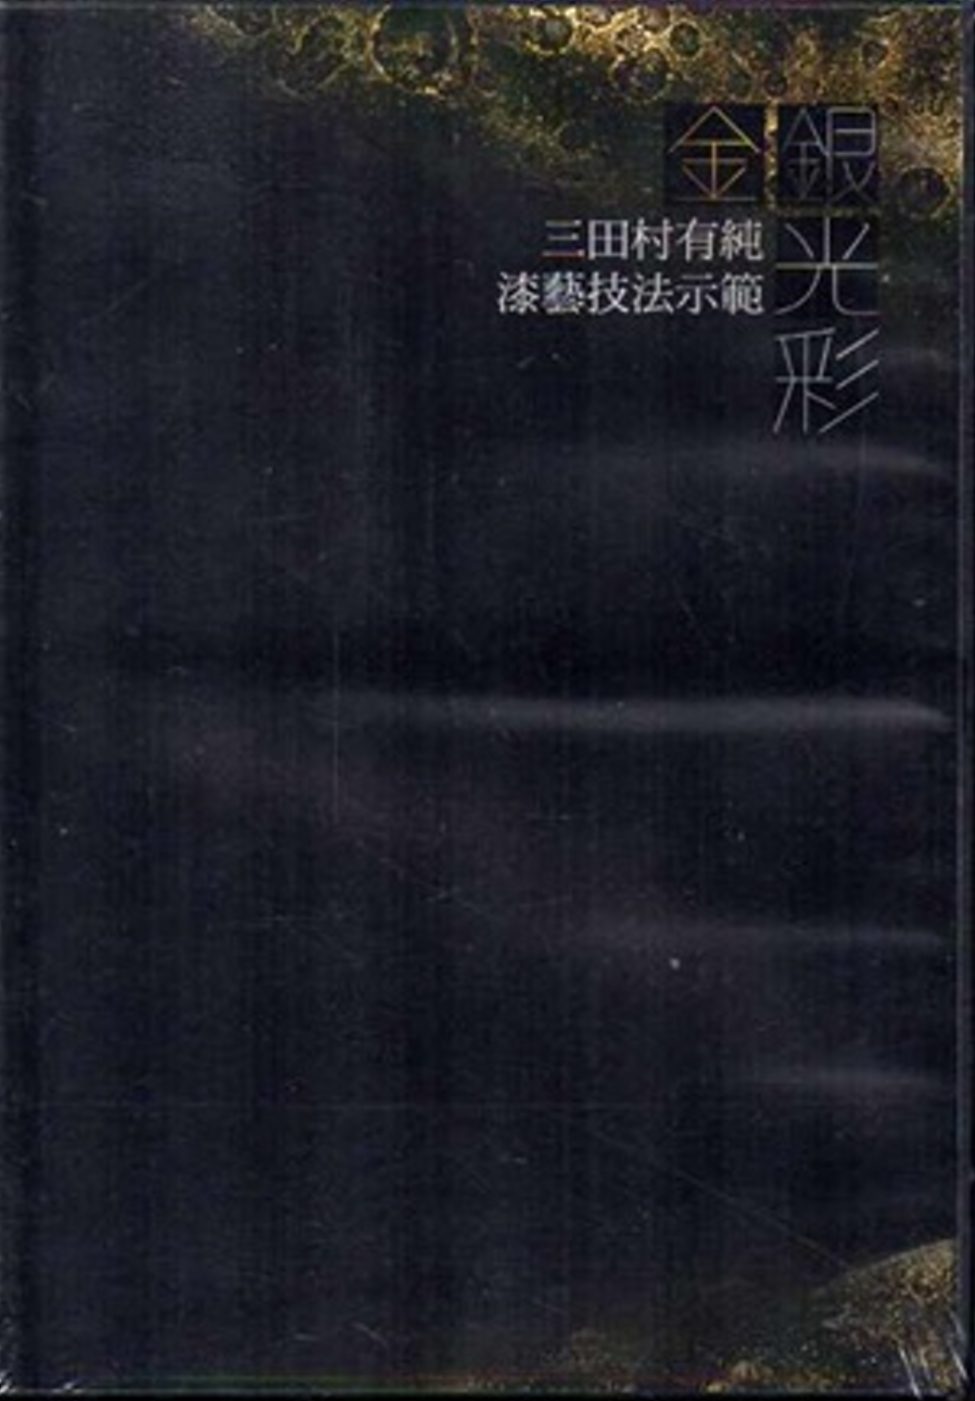 金銀光彩-三田村有純的漆藝世界DVD